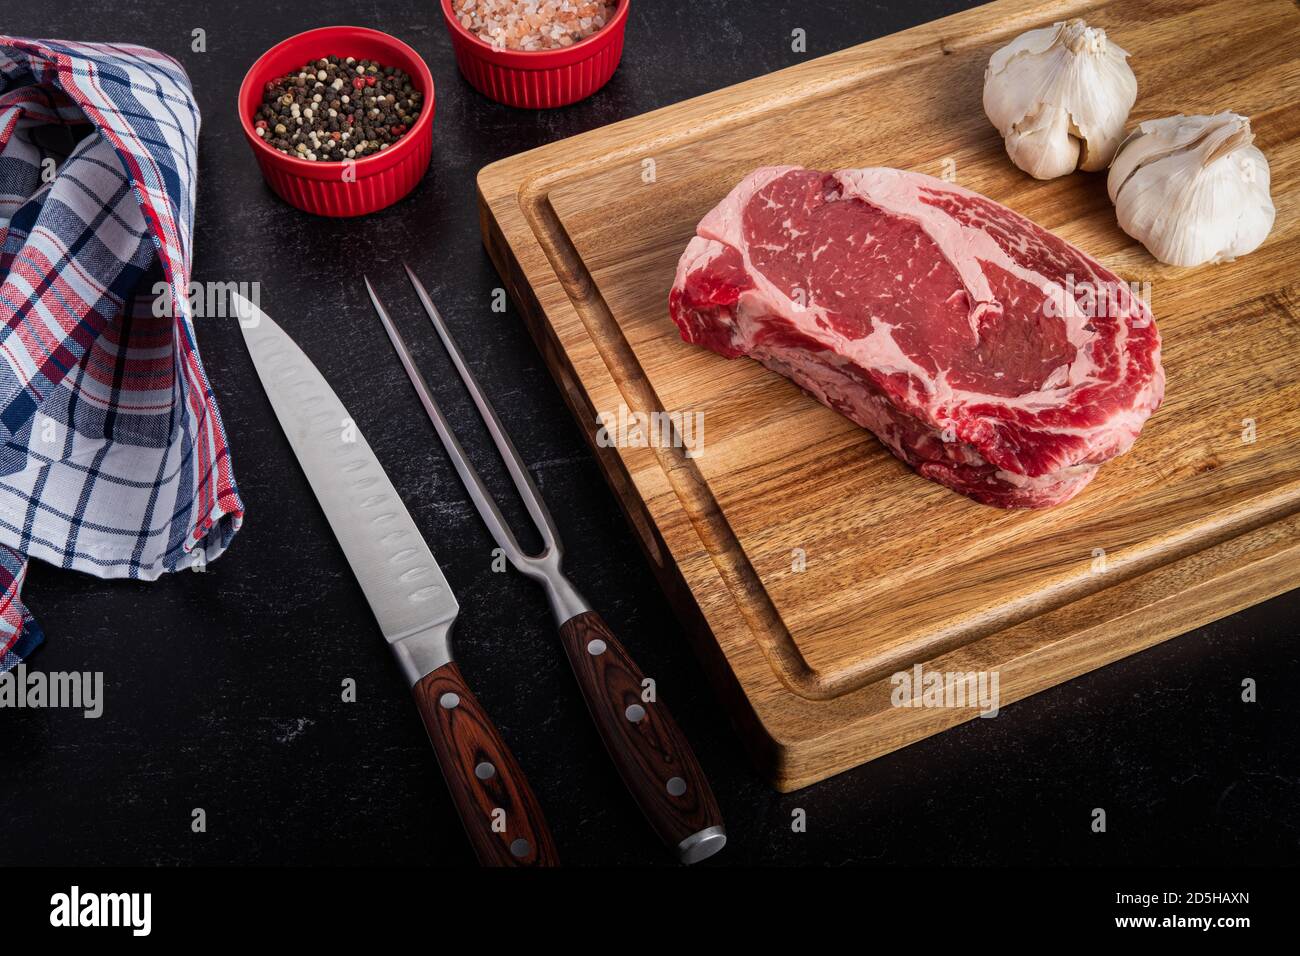 Foto von rohem Ribeye Steak ohne Knochen mit Meersalz, Pfeffer, Knoblauch auf einem Schneidebrett mit einem Schnitzmesser und Gabel-Set Stockfoto